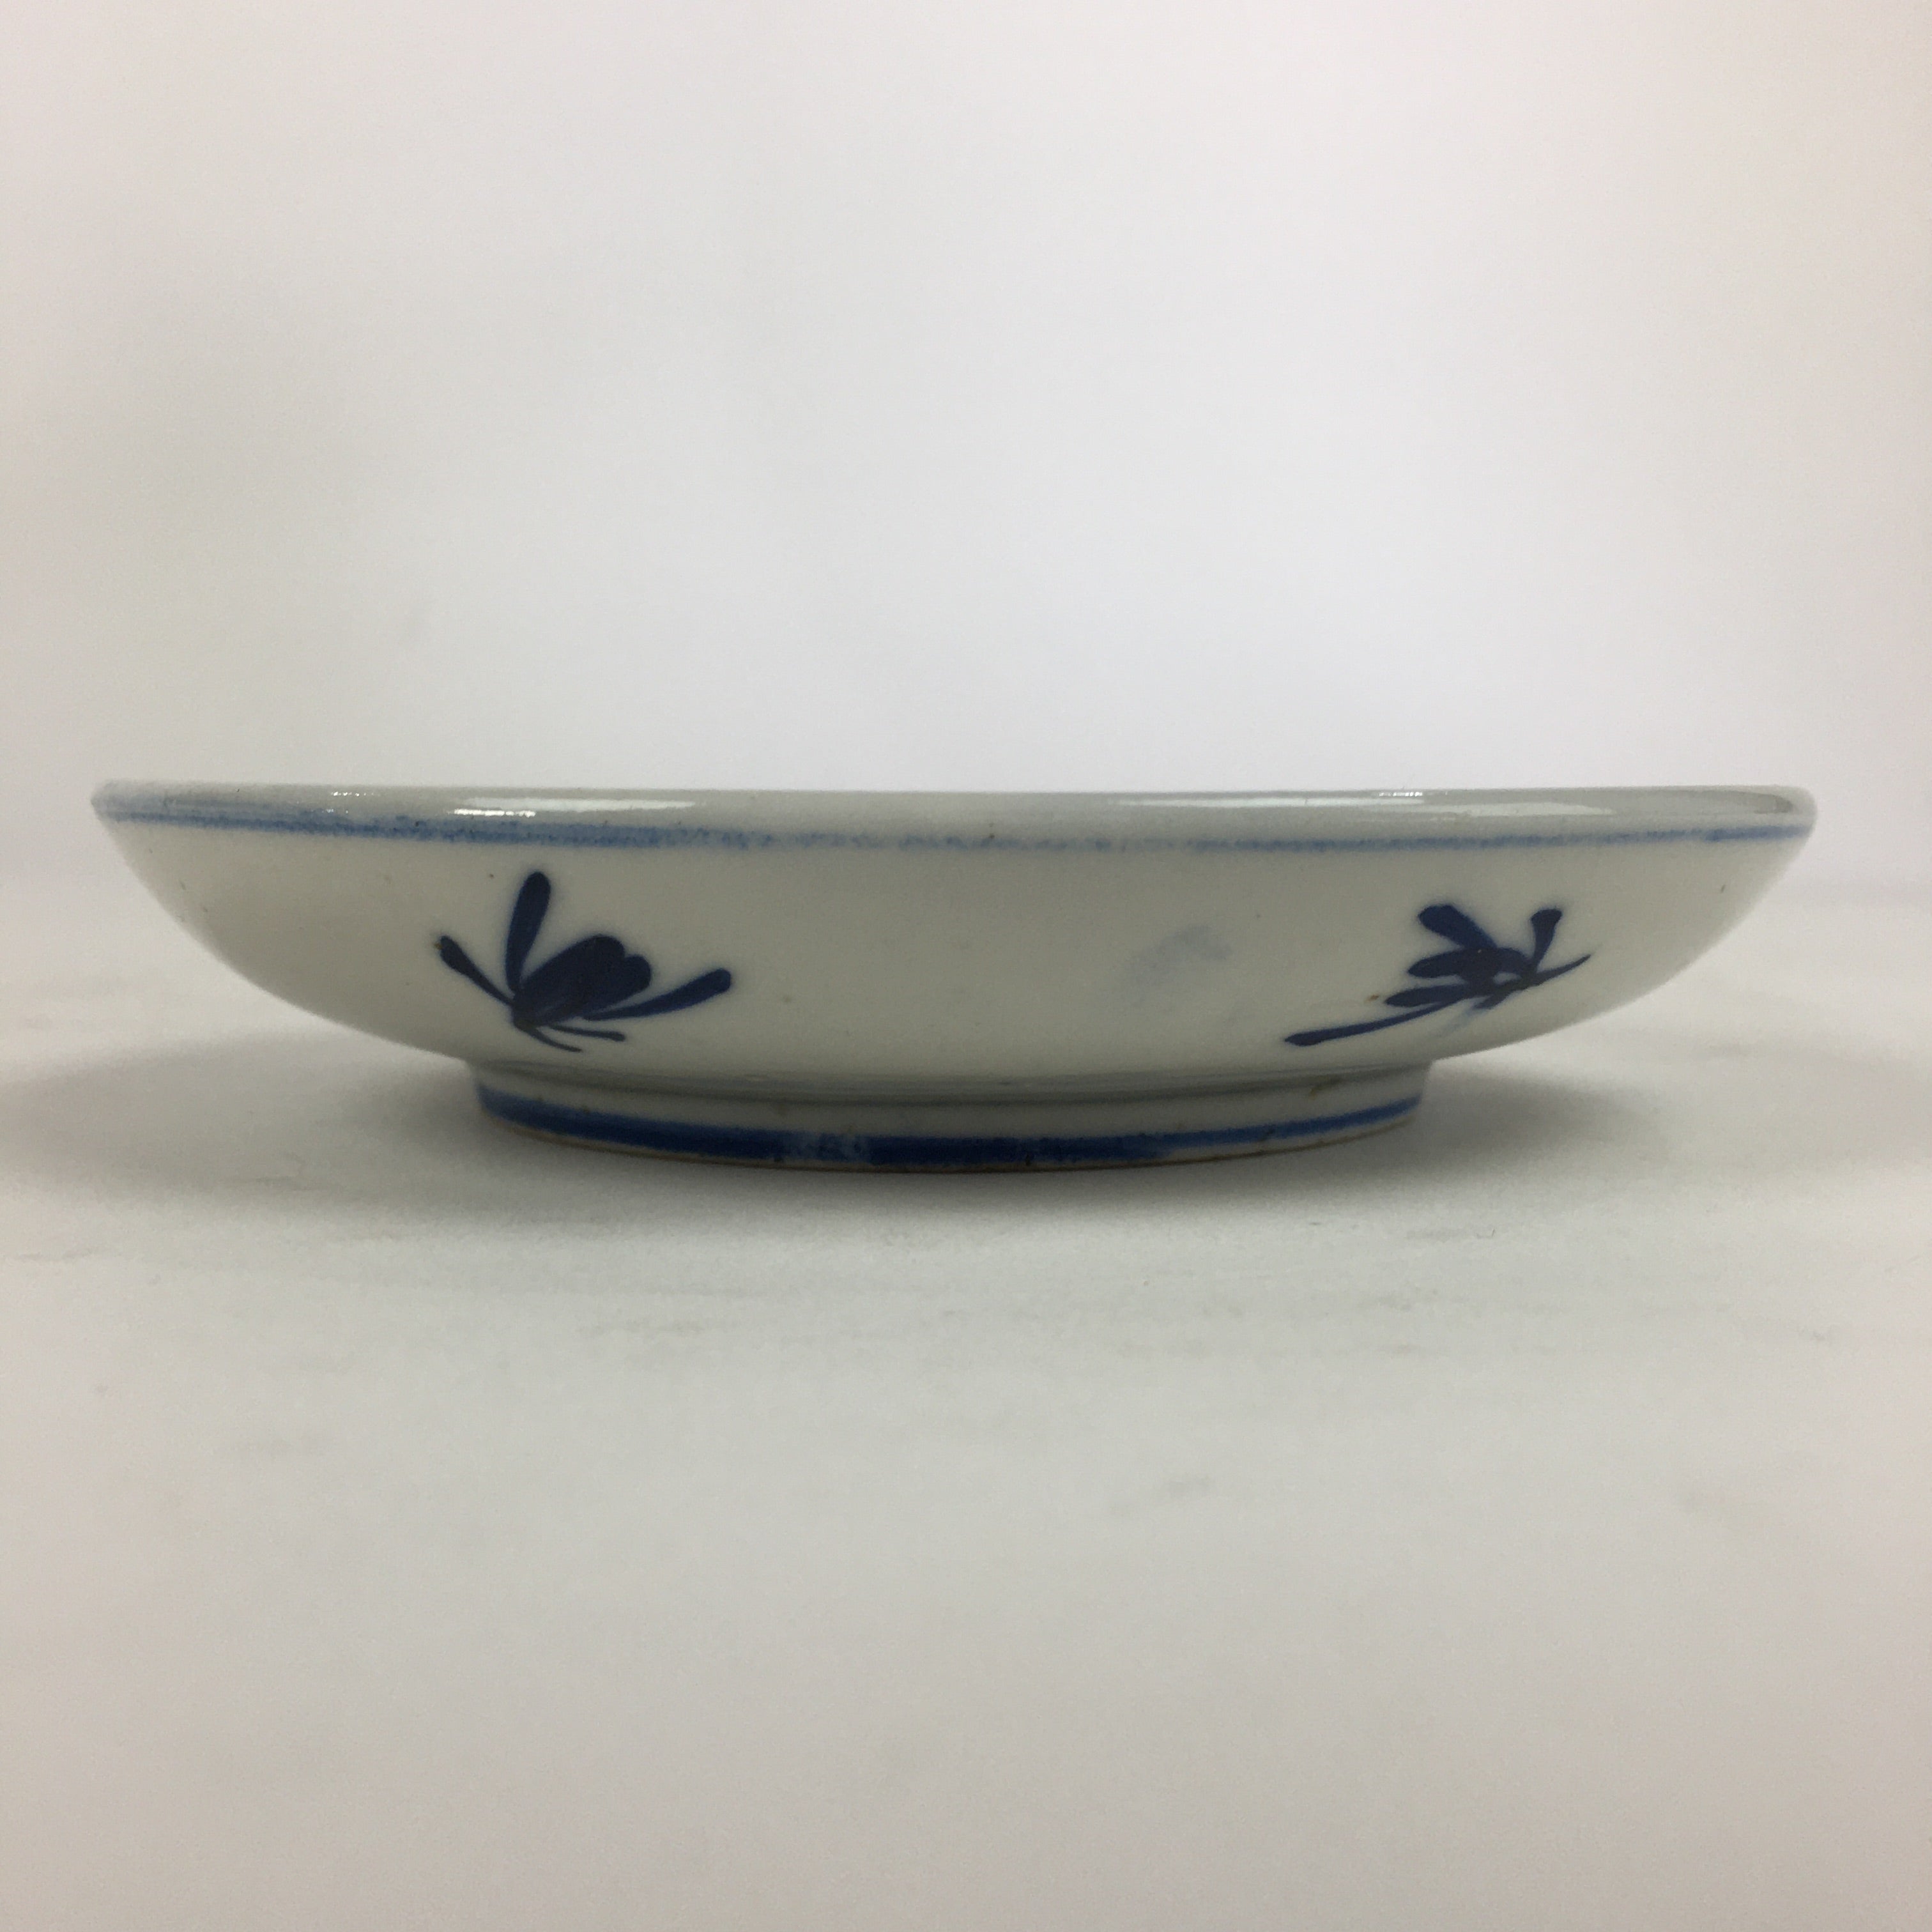 Japanese Porcelain Small Plate Kozara Vtg Blue Flower Dandelion Kozara PP827